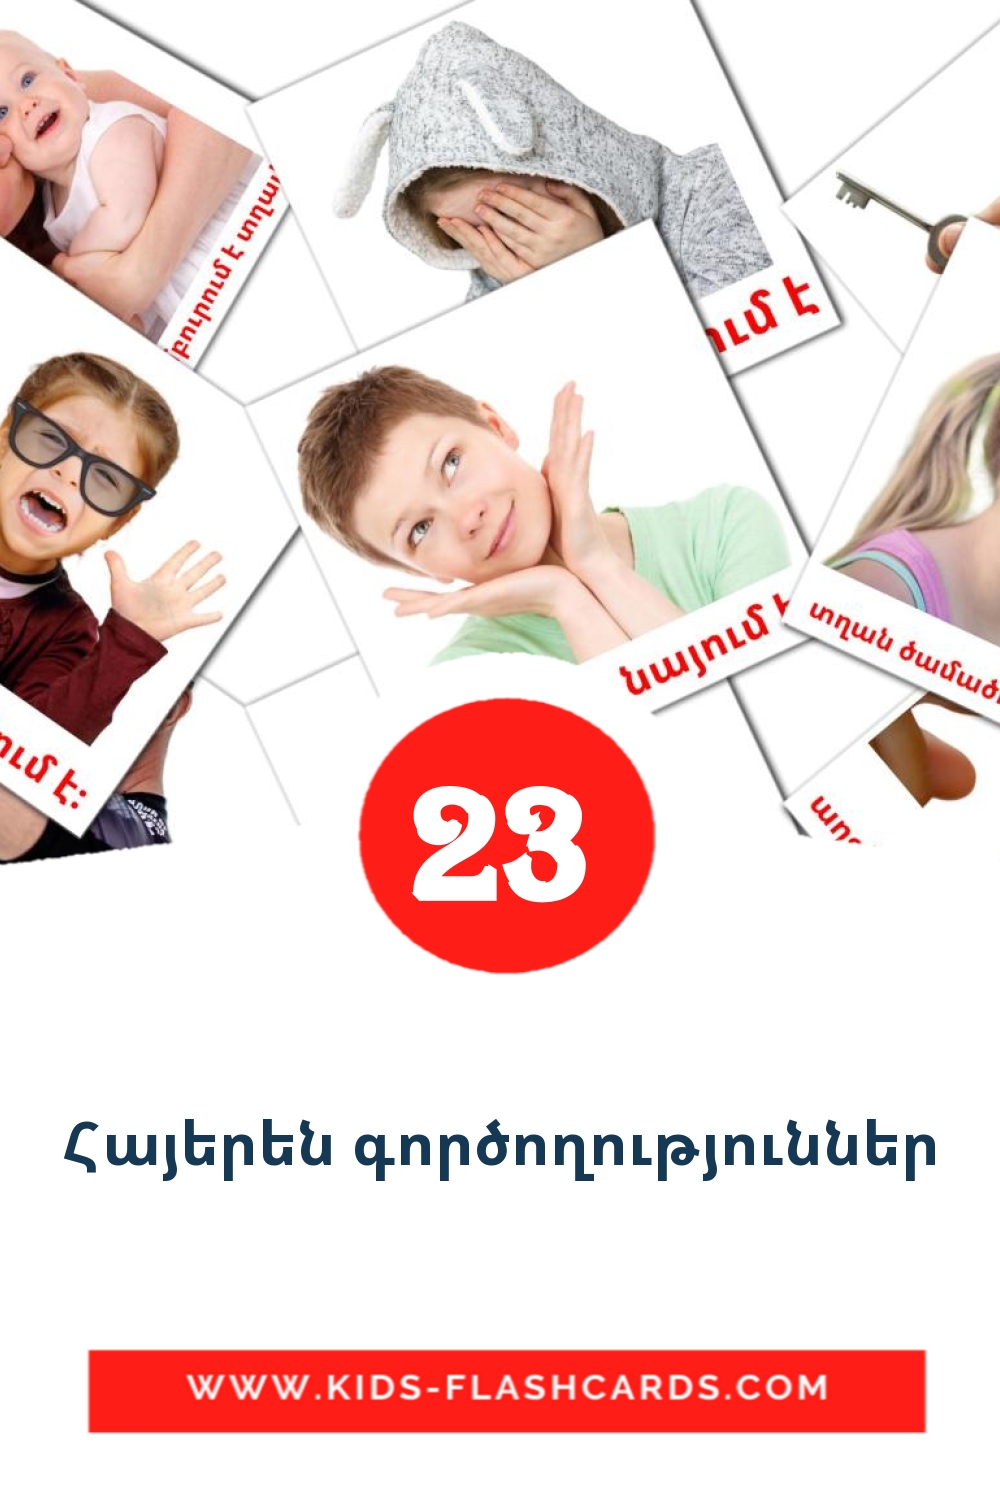 23 Cartões com Imagens de Հայերեն գործողություններ para Jardim de Infância em armênio